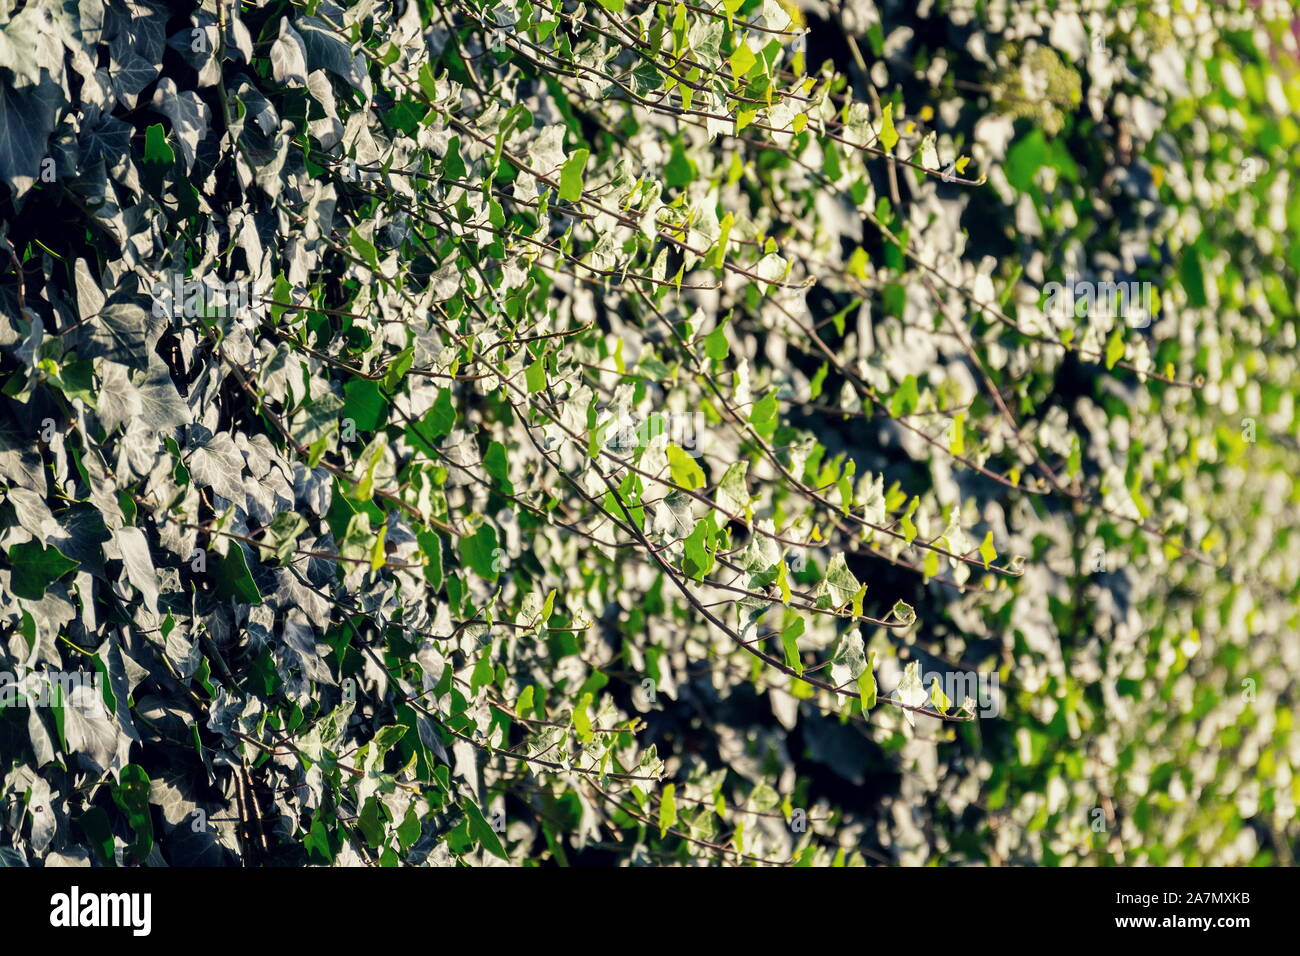 Evergreen gemeinsame Efeu, Hedera helix, kriechen sie auf der Wand, Englisch europäische Efeu, sonnigen Sommertag Stockfoto